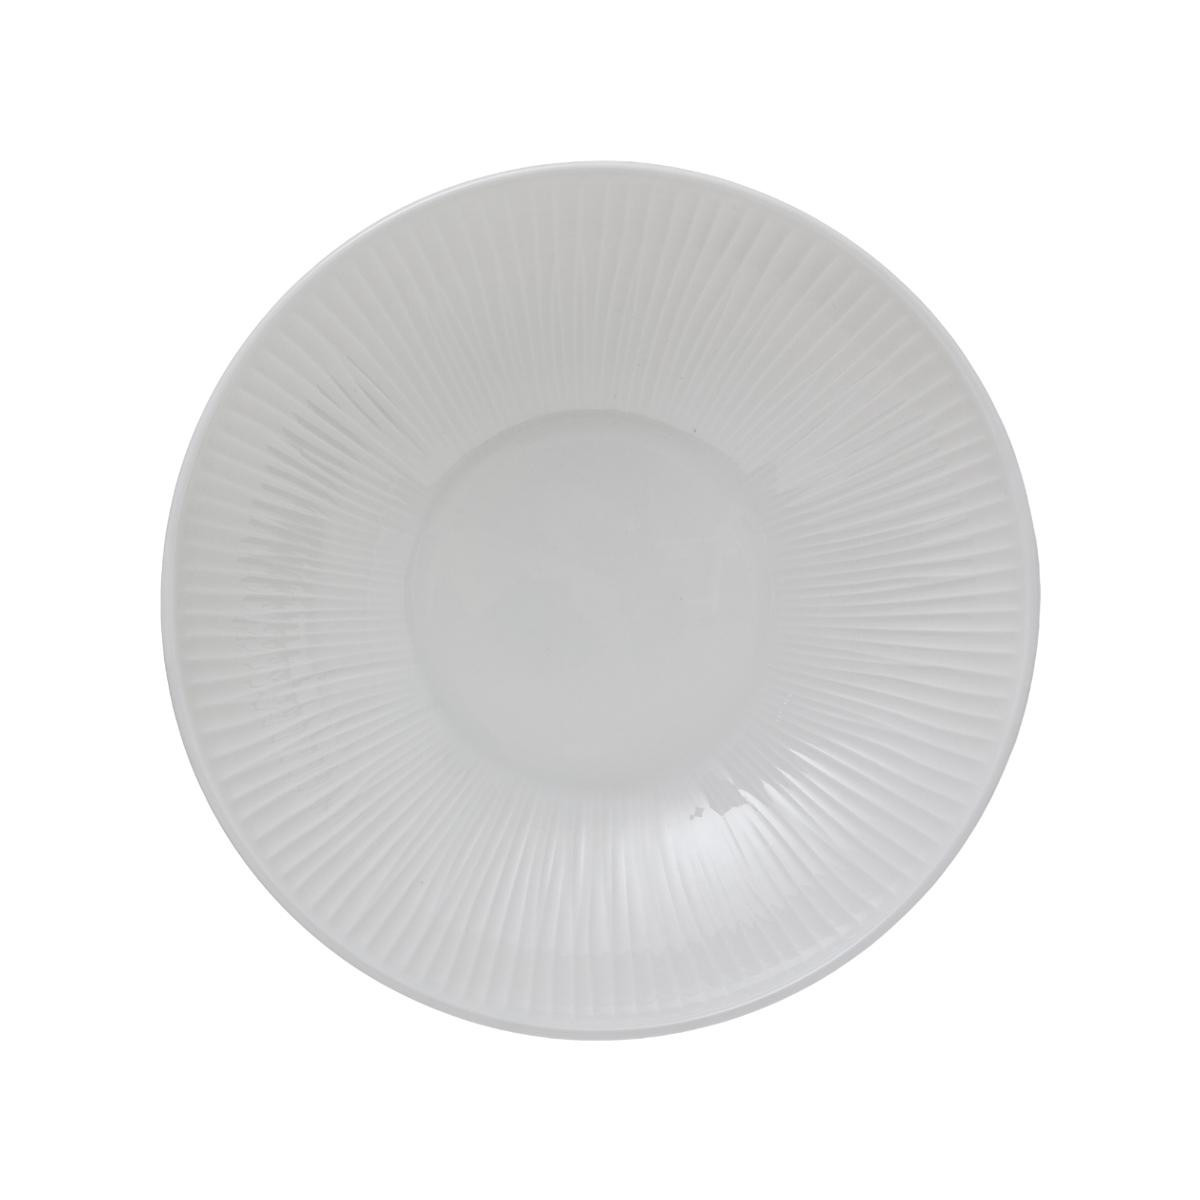 Assiette Creuse en Porcelaine Blanche - Vaisselle Moderne et Chic